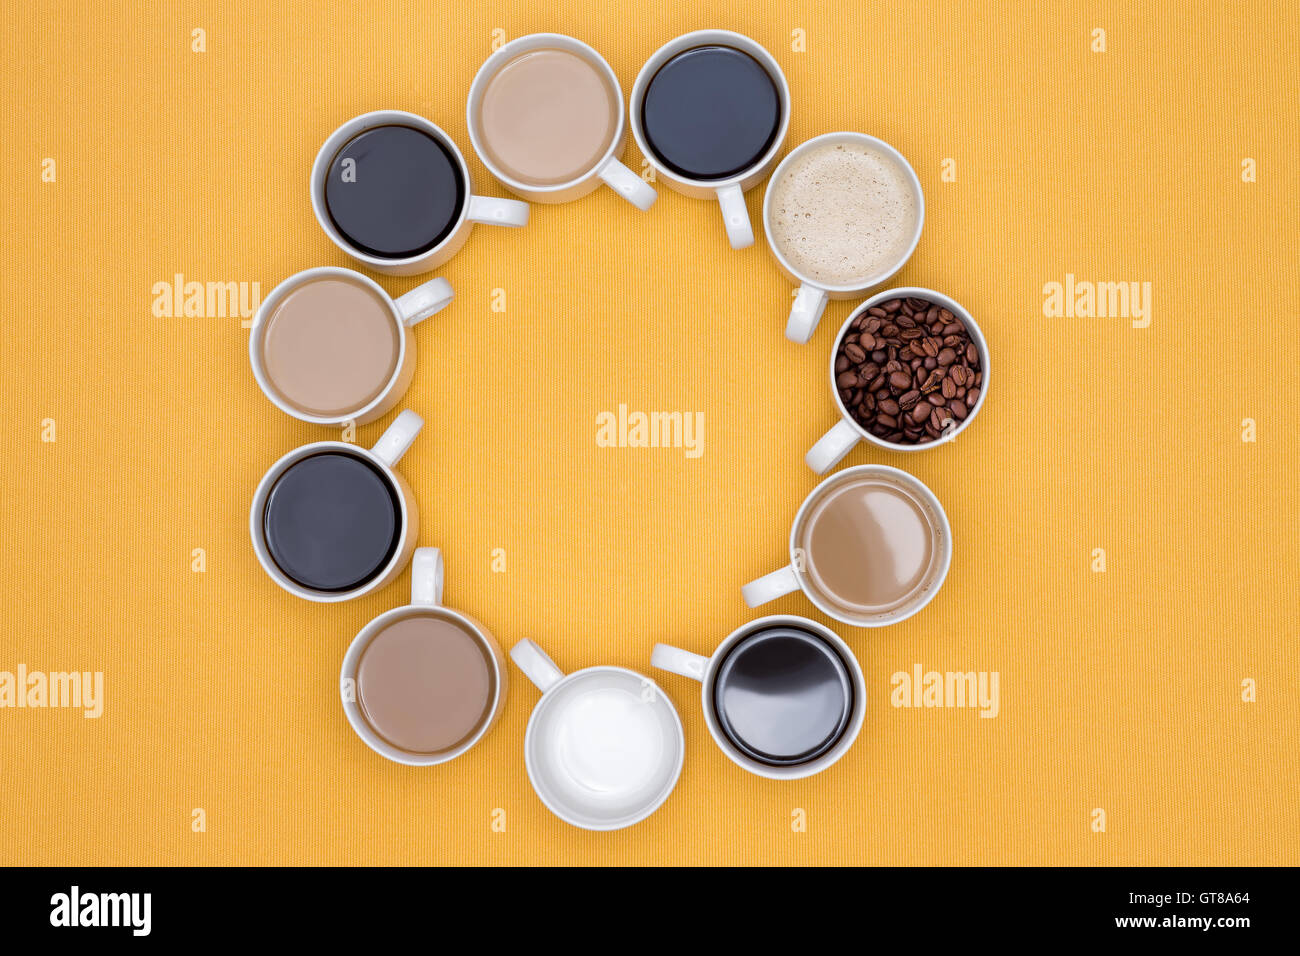 Tasses de café chaud dans différentes saveurs disposées en cercle sur un fond jaune, capturé en High Angle View. Banque D'Images